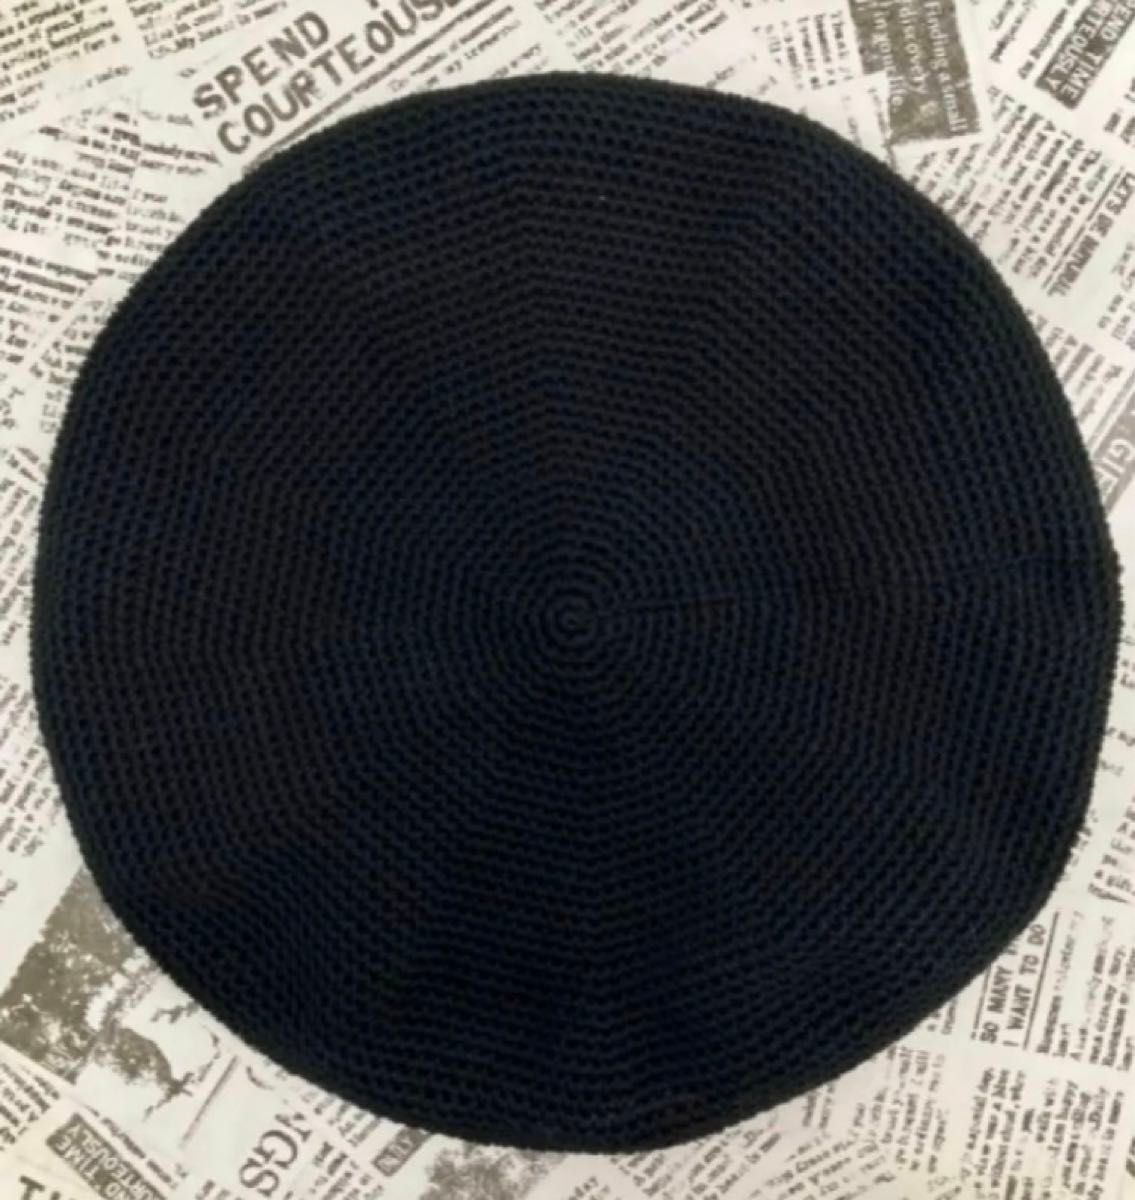 ハンドメイド　手編み　ベレー帽　年中使える綿100 黒 ブラック